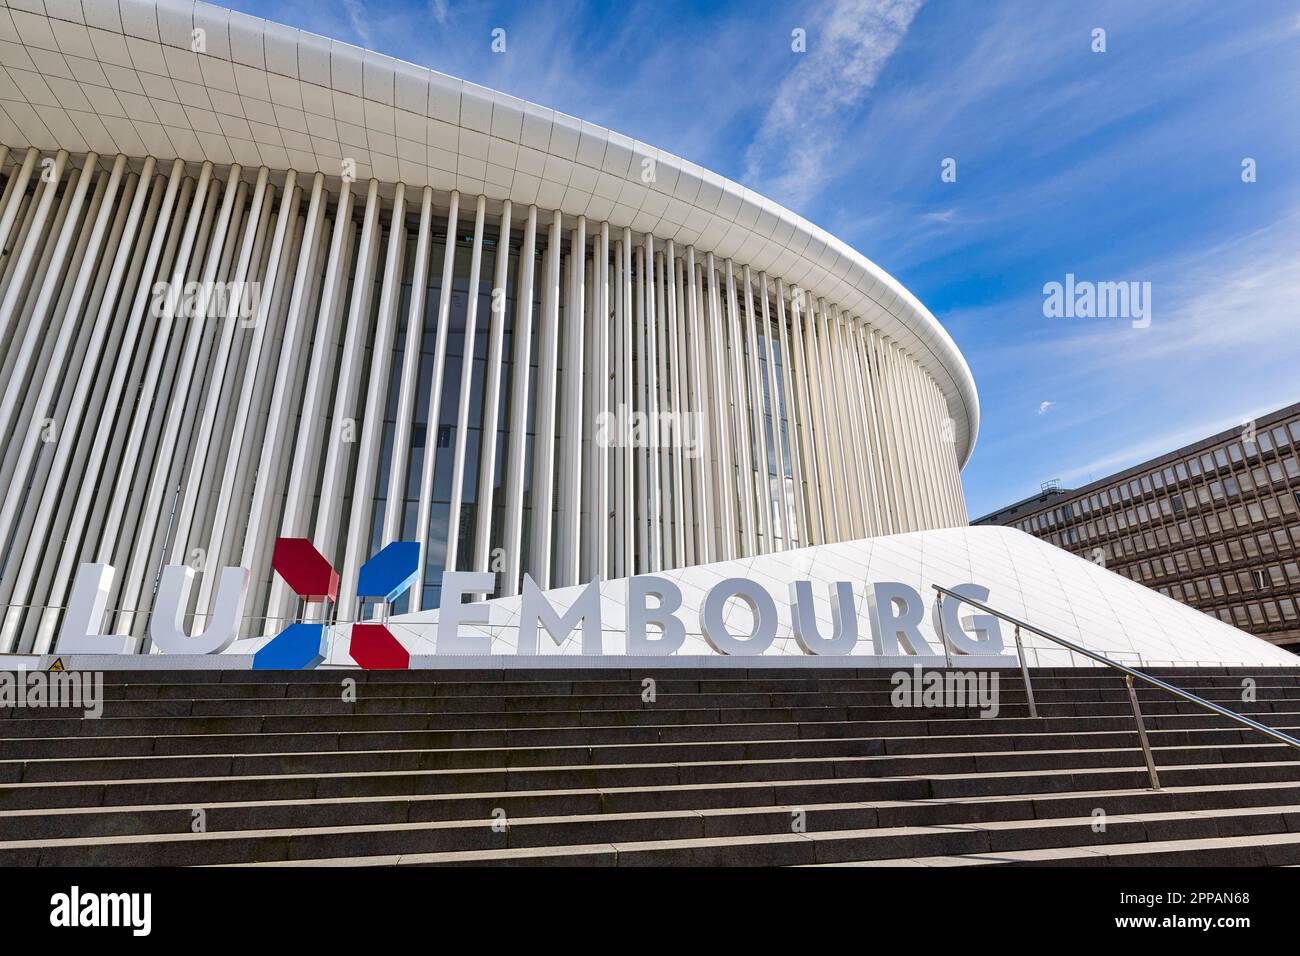 Philharmonie Lussemburgo con lettere, marchio nazionale, marketing, architetto Christian de Portzamparc, architettura moderna, Place de l'Europe Foto Stock